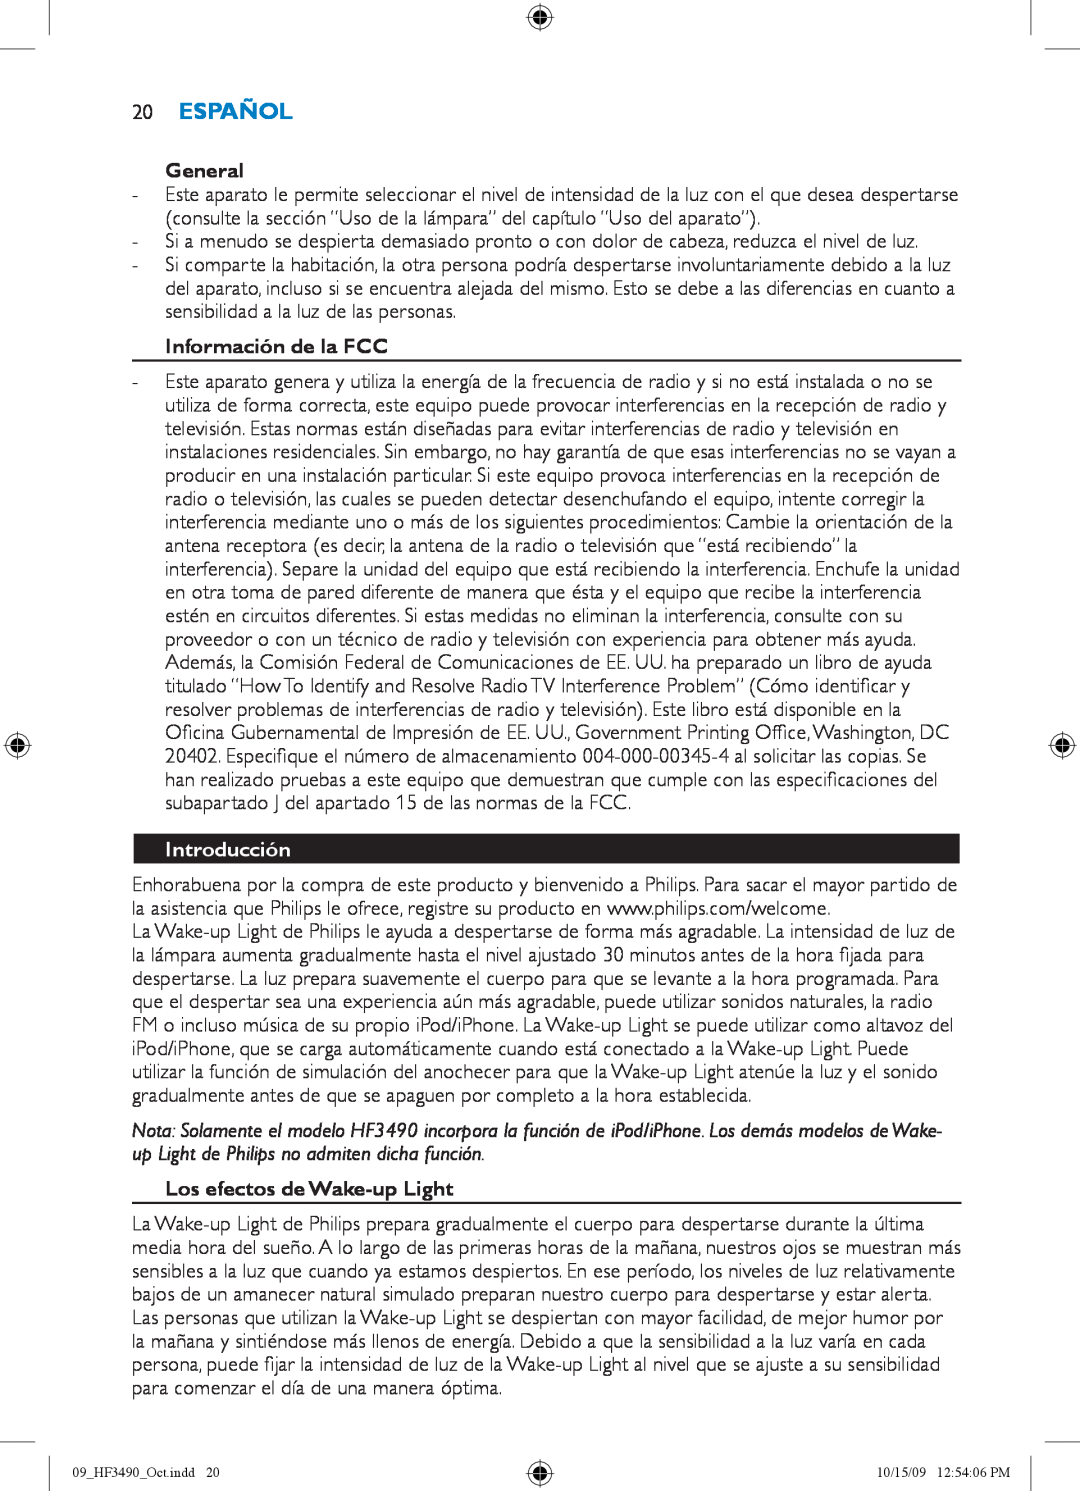 Philips HF3490/60 manual 20Español, Información de la FCC, Introducción, Los efectos de Wake-upLight, General 